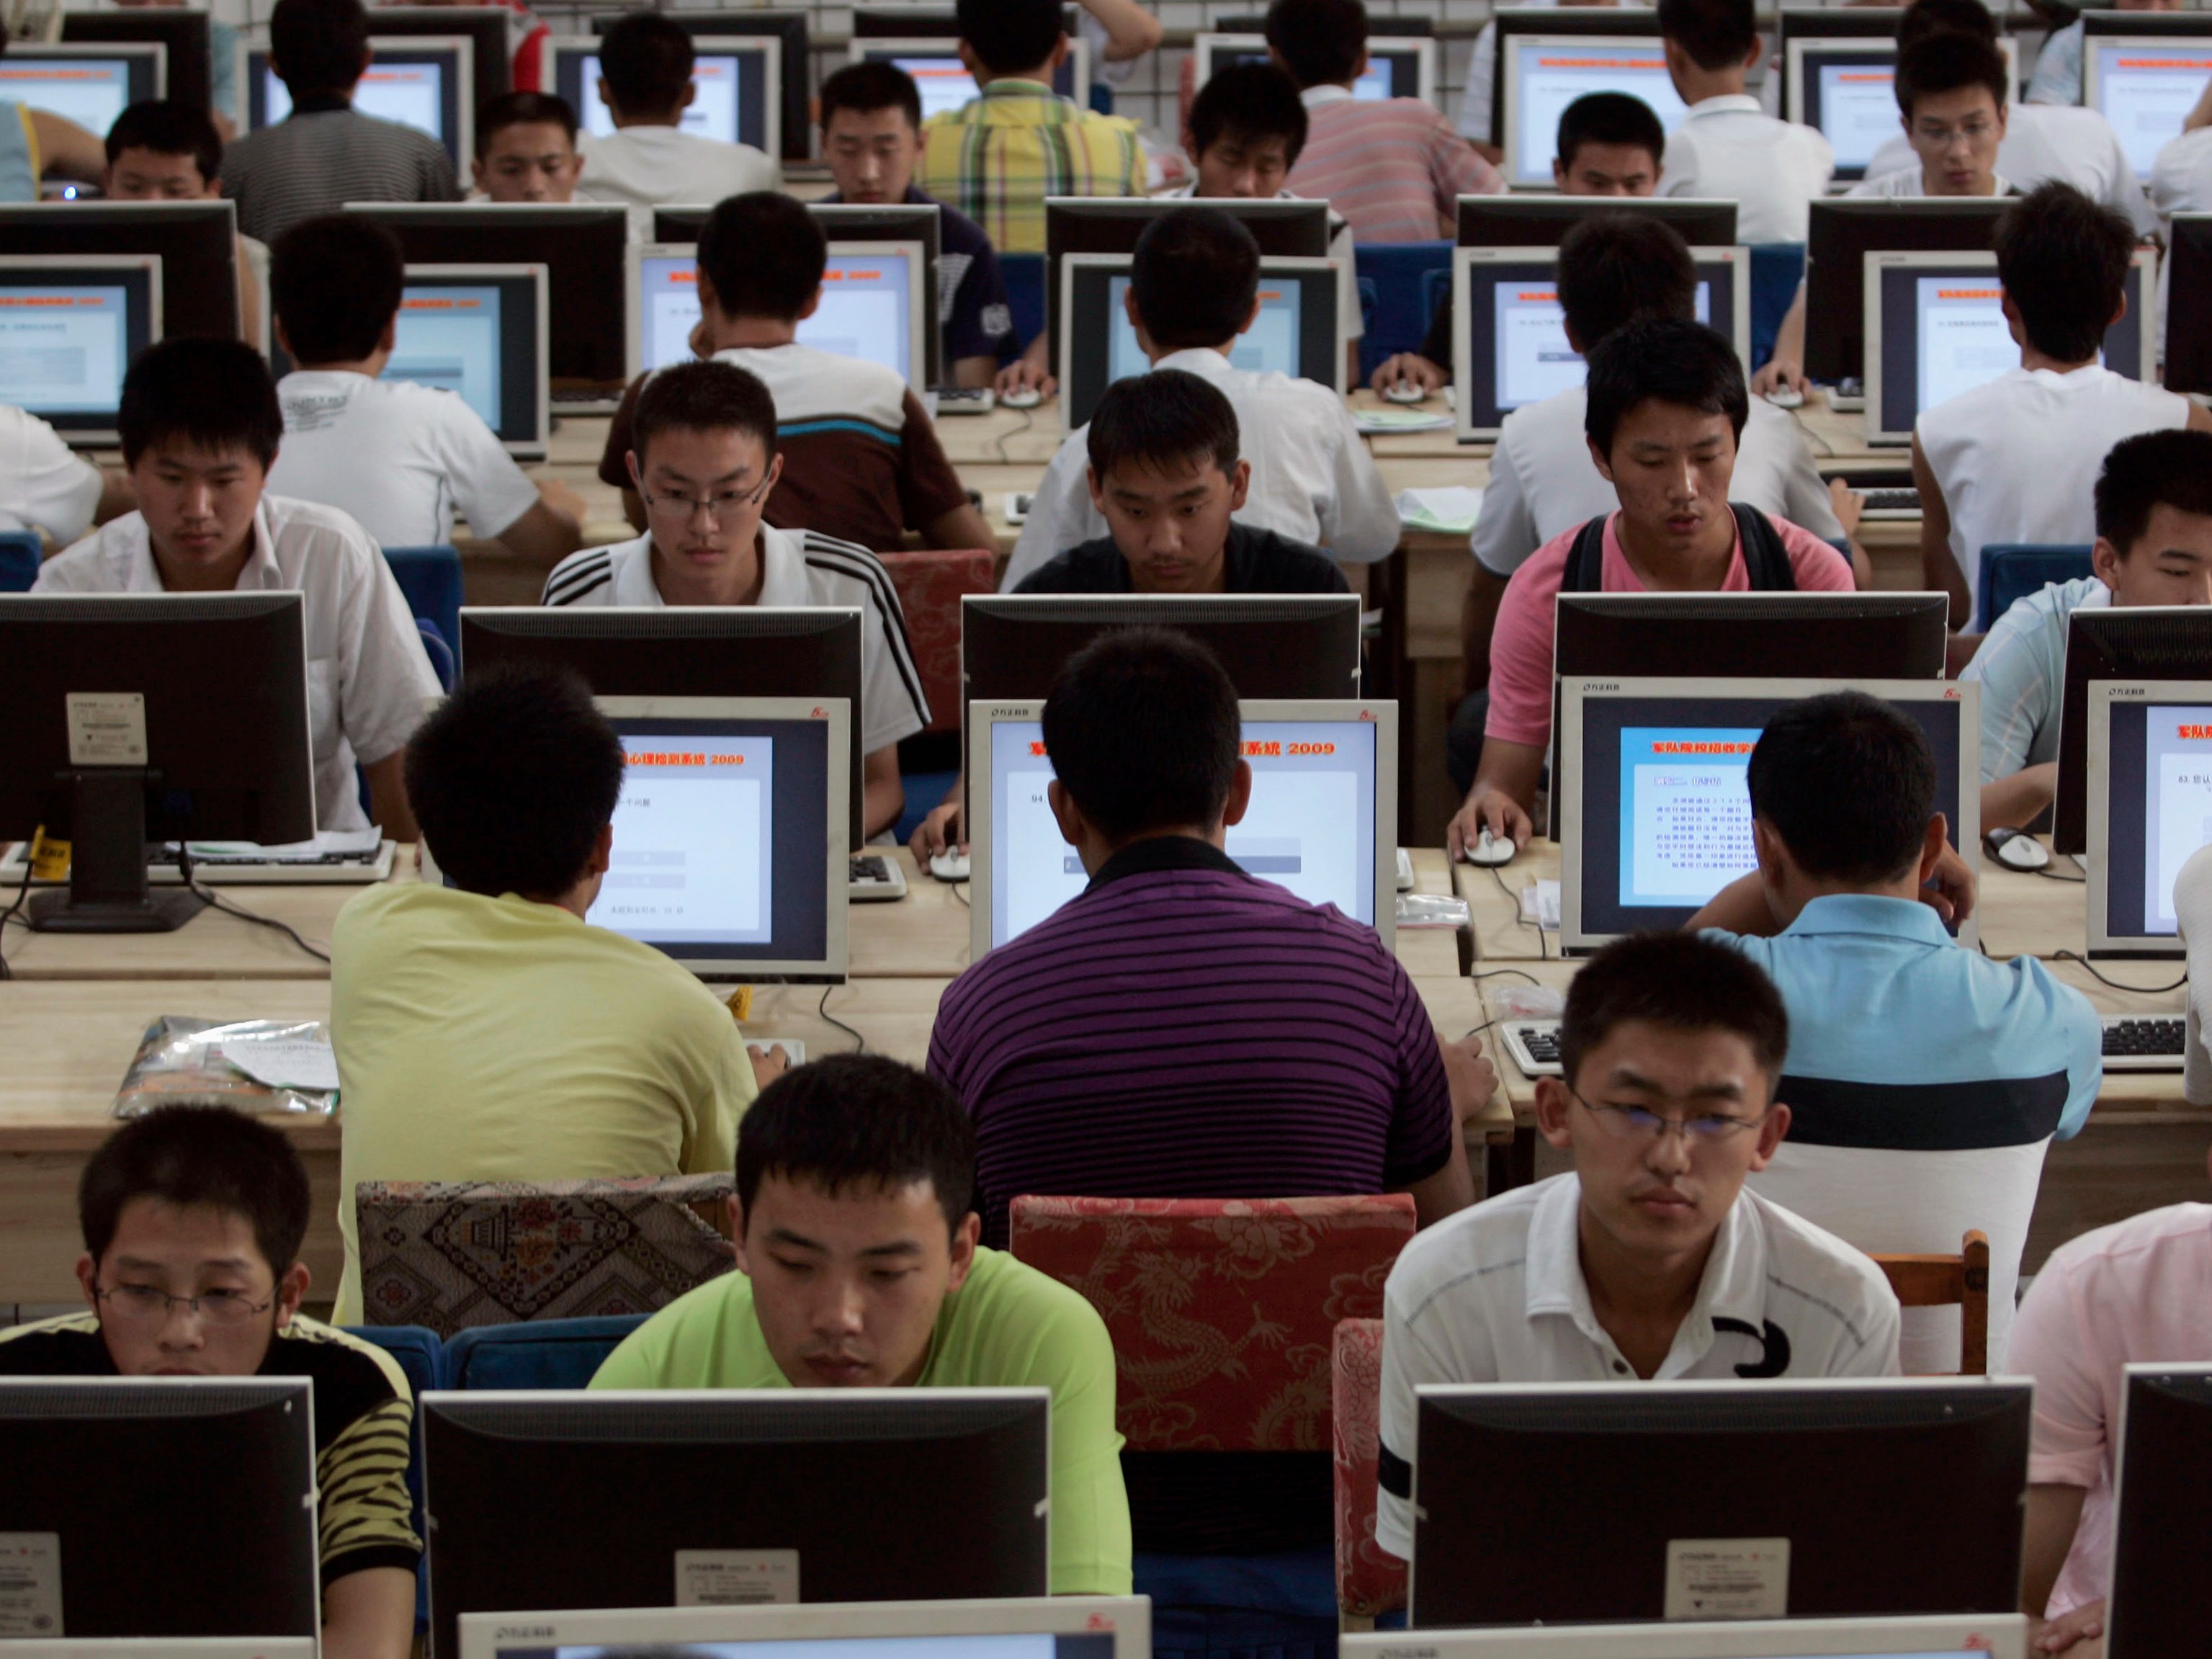 [:ka]მაღალი ტექნოლოგიით აღჭურვილი საკლასო ოთახები ჩინეთში, როგორც პრიორიტეტი განათლების სისტემაში[:]